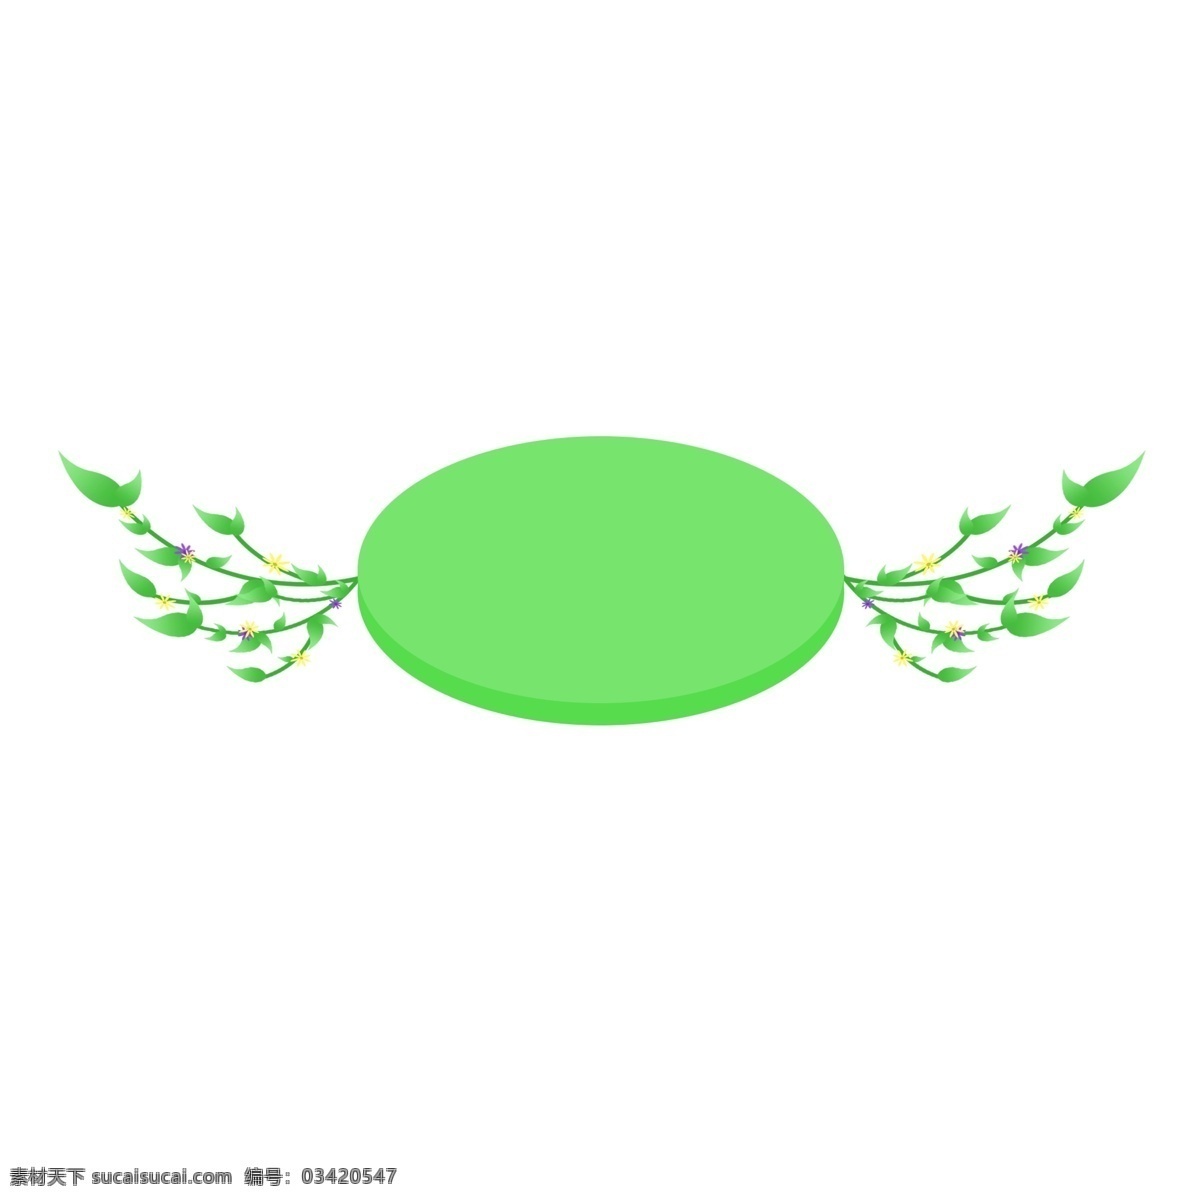 椭圆 浮动 边框 插画 椭圆边框 绿色的边框 植物边框 飘落的边框 创意边框 立体边框 春季边框